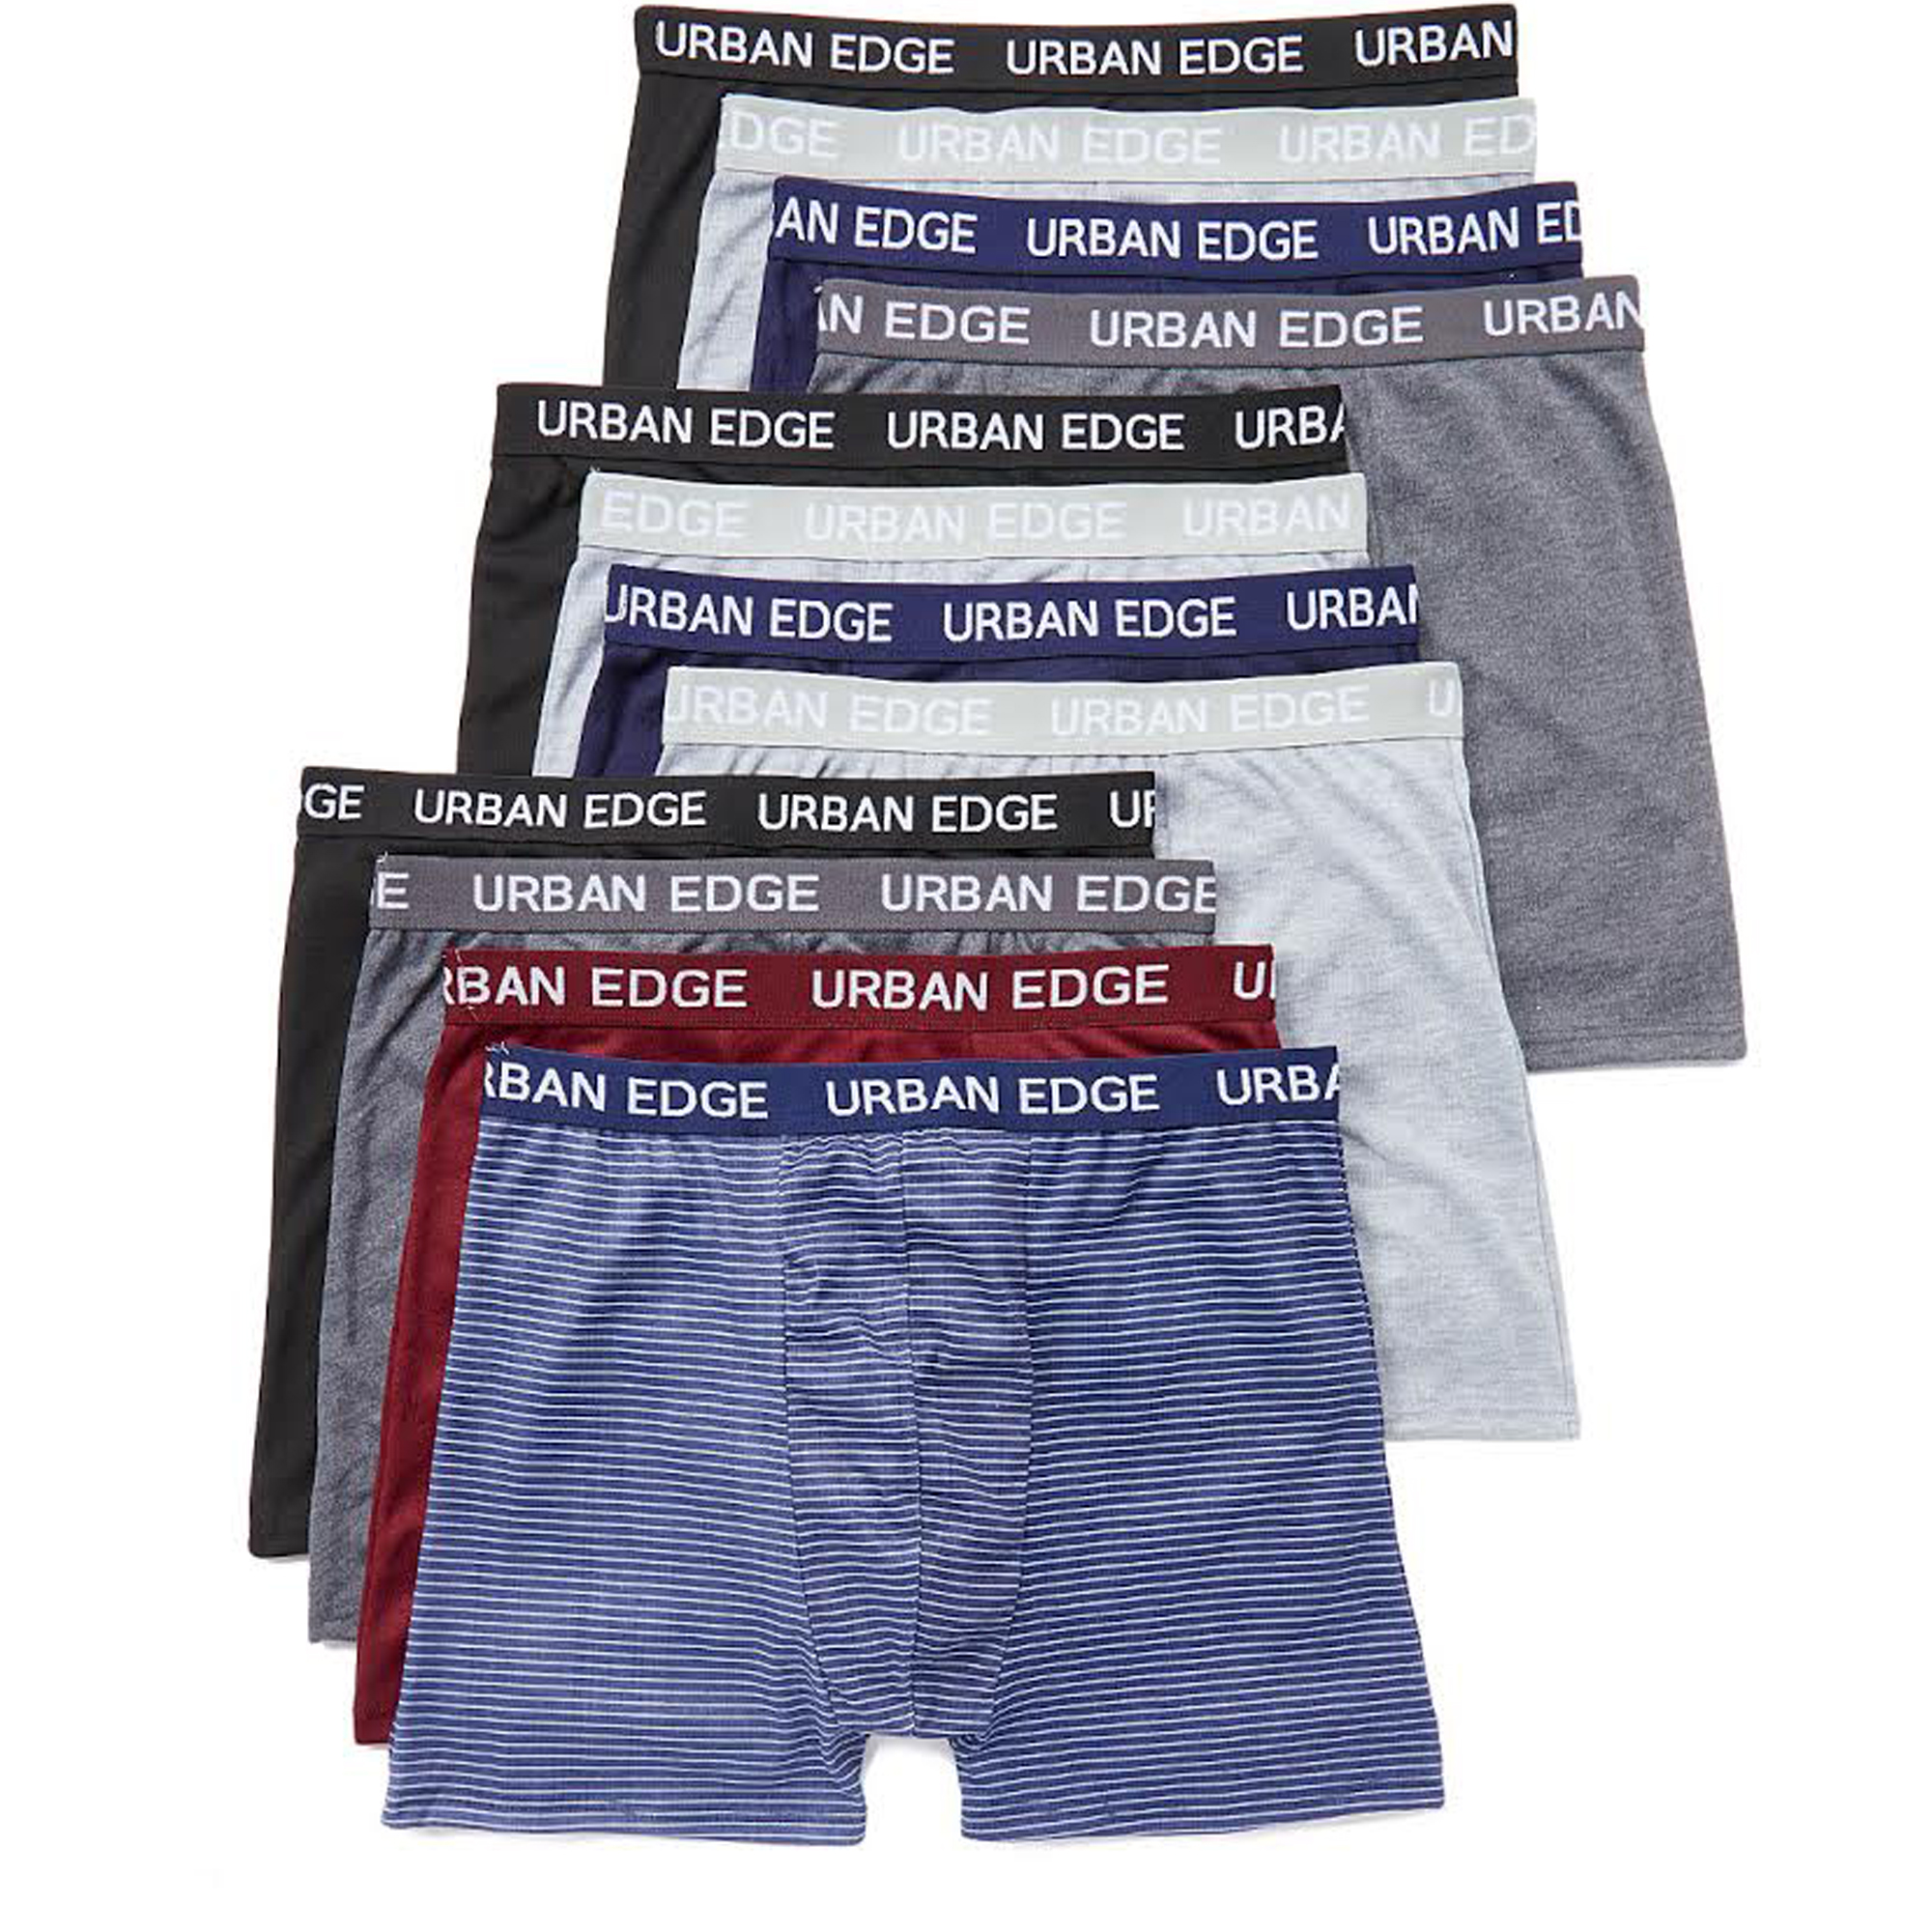 Buy Cheap Underwear in Bulk Online | ErosWholesale.com | www ...